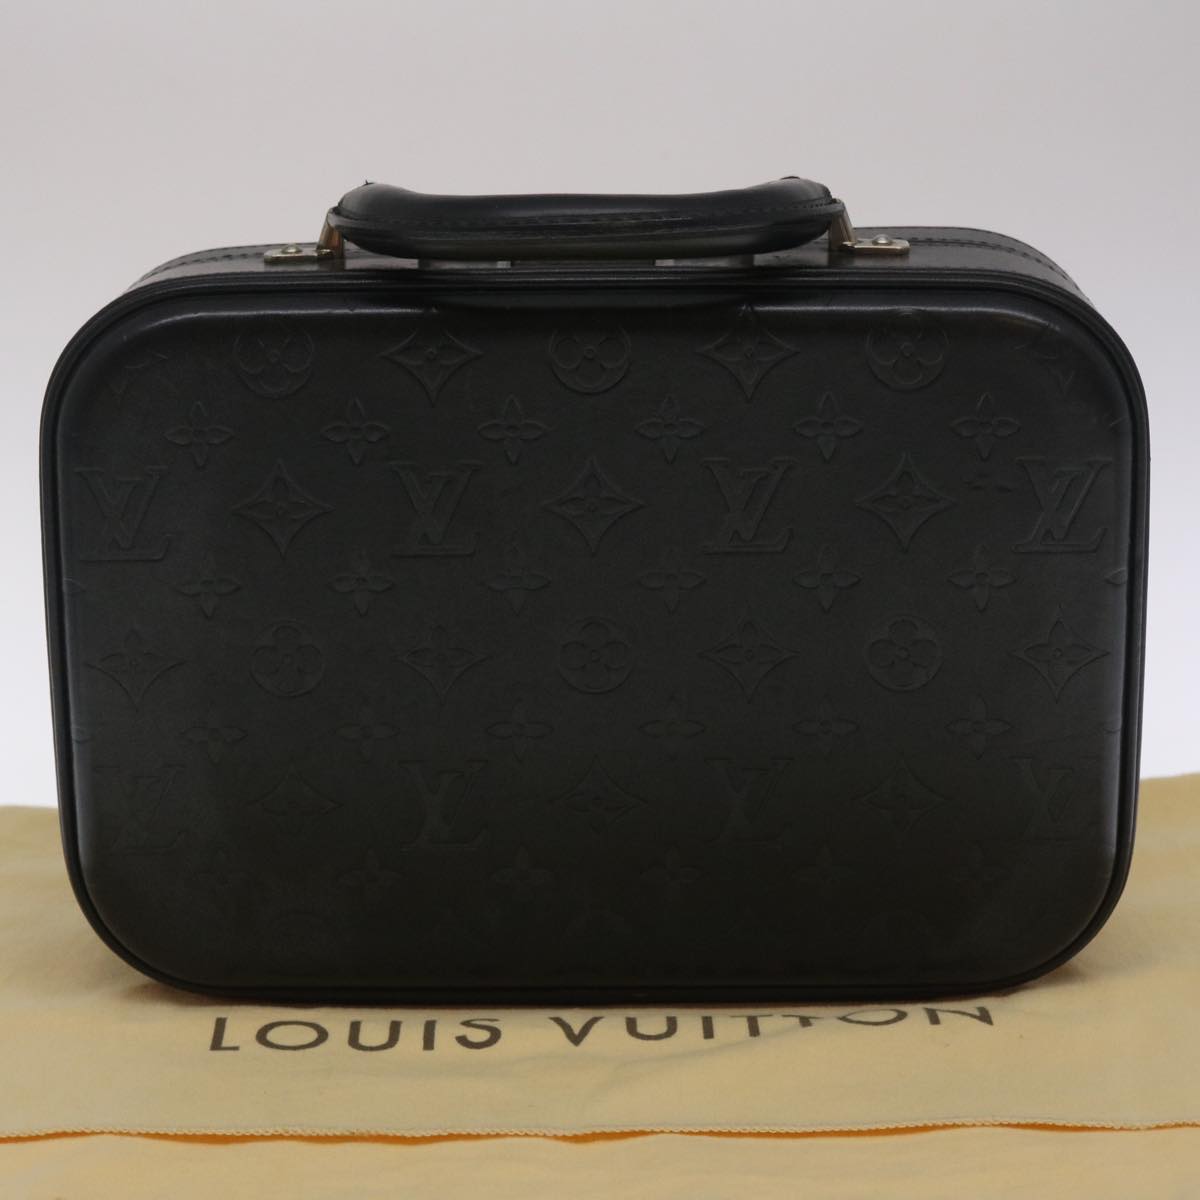 LOUIS VUITTON Monogram Glace Valisette PM Hand Bag Black M92235 LV Auth pt1110A